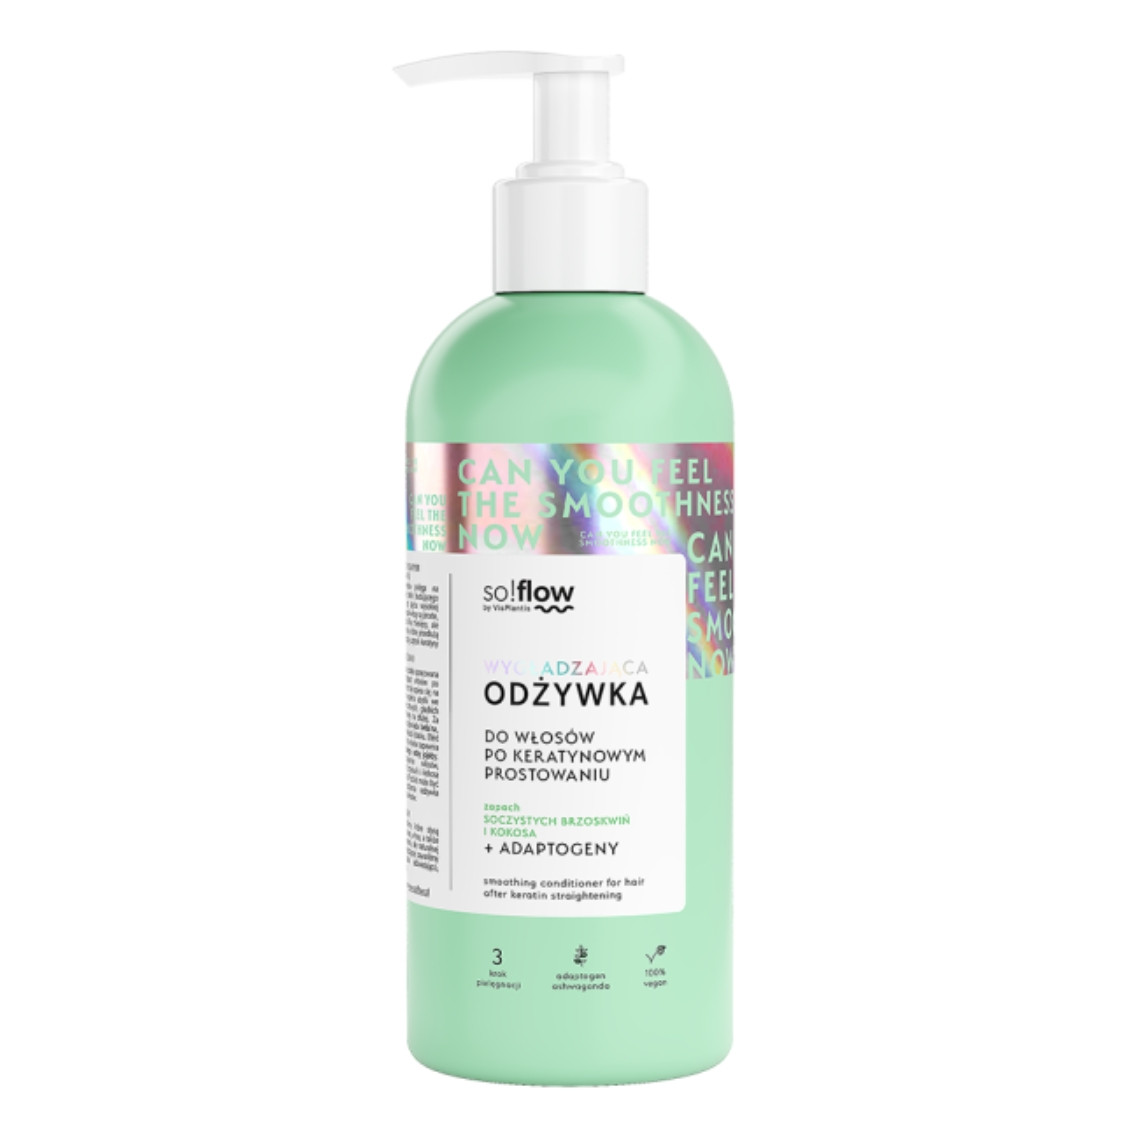 naturalny szampon po keratynowym prostowaniu 2019